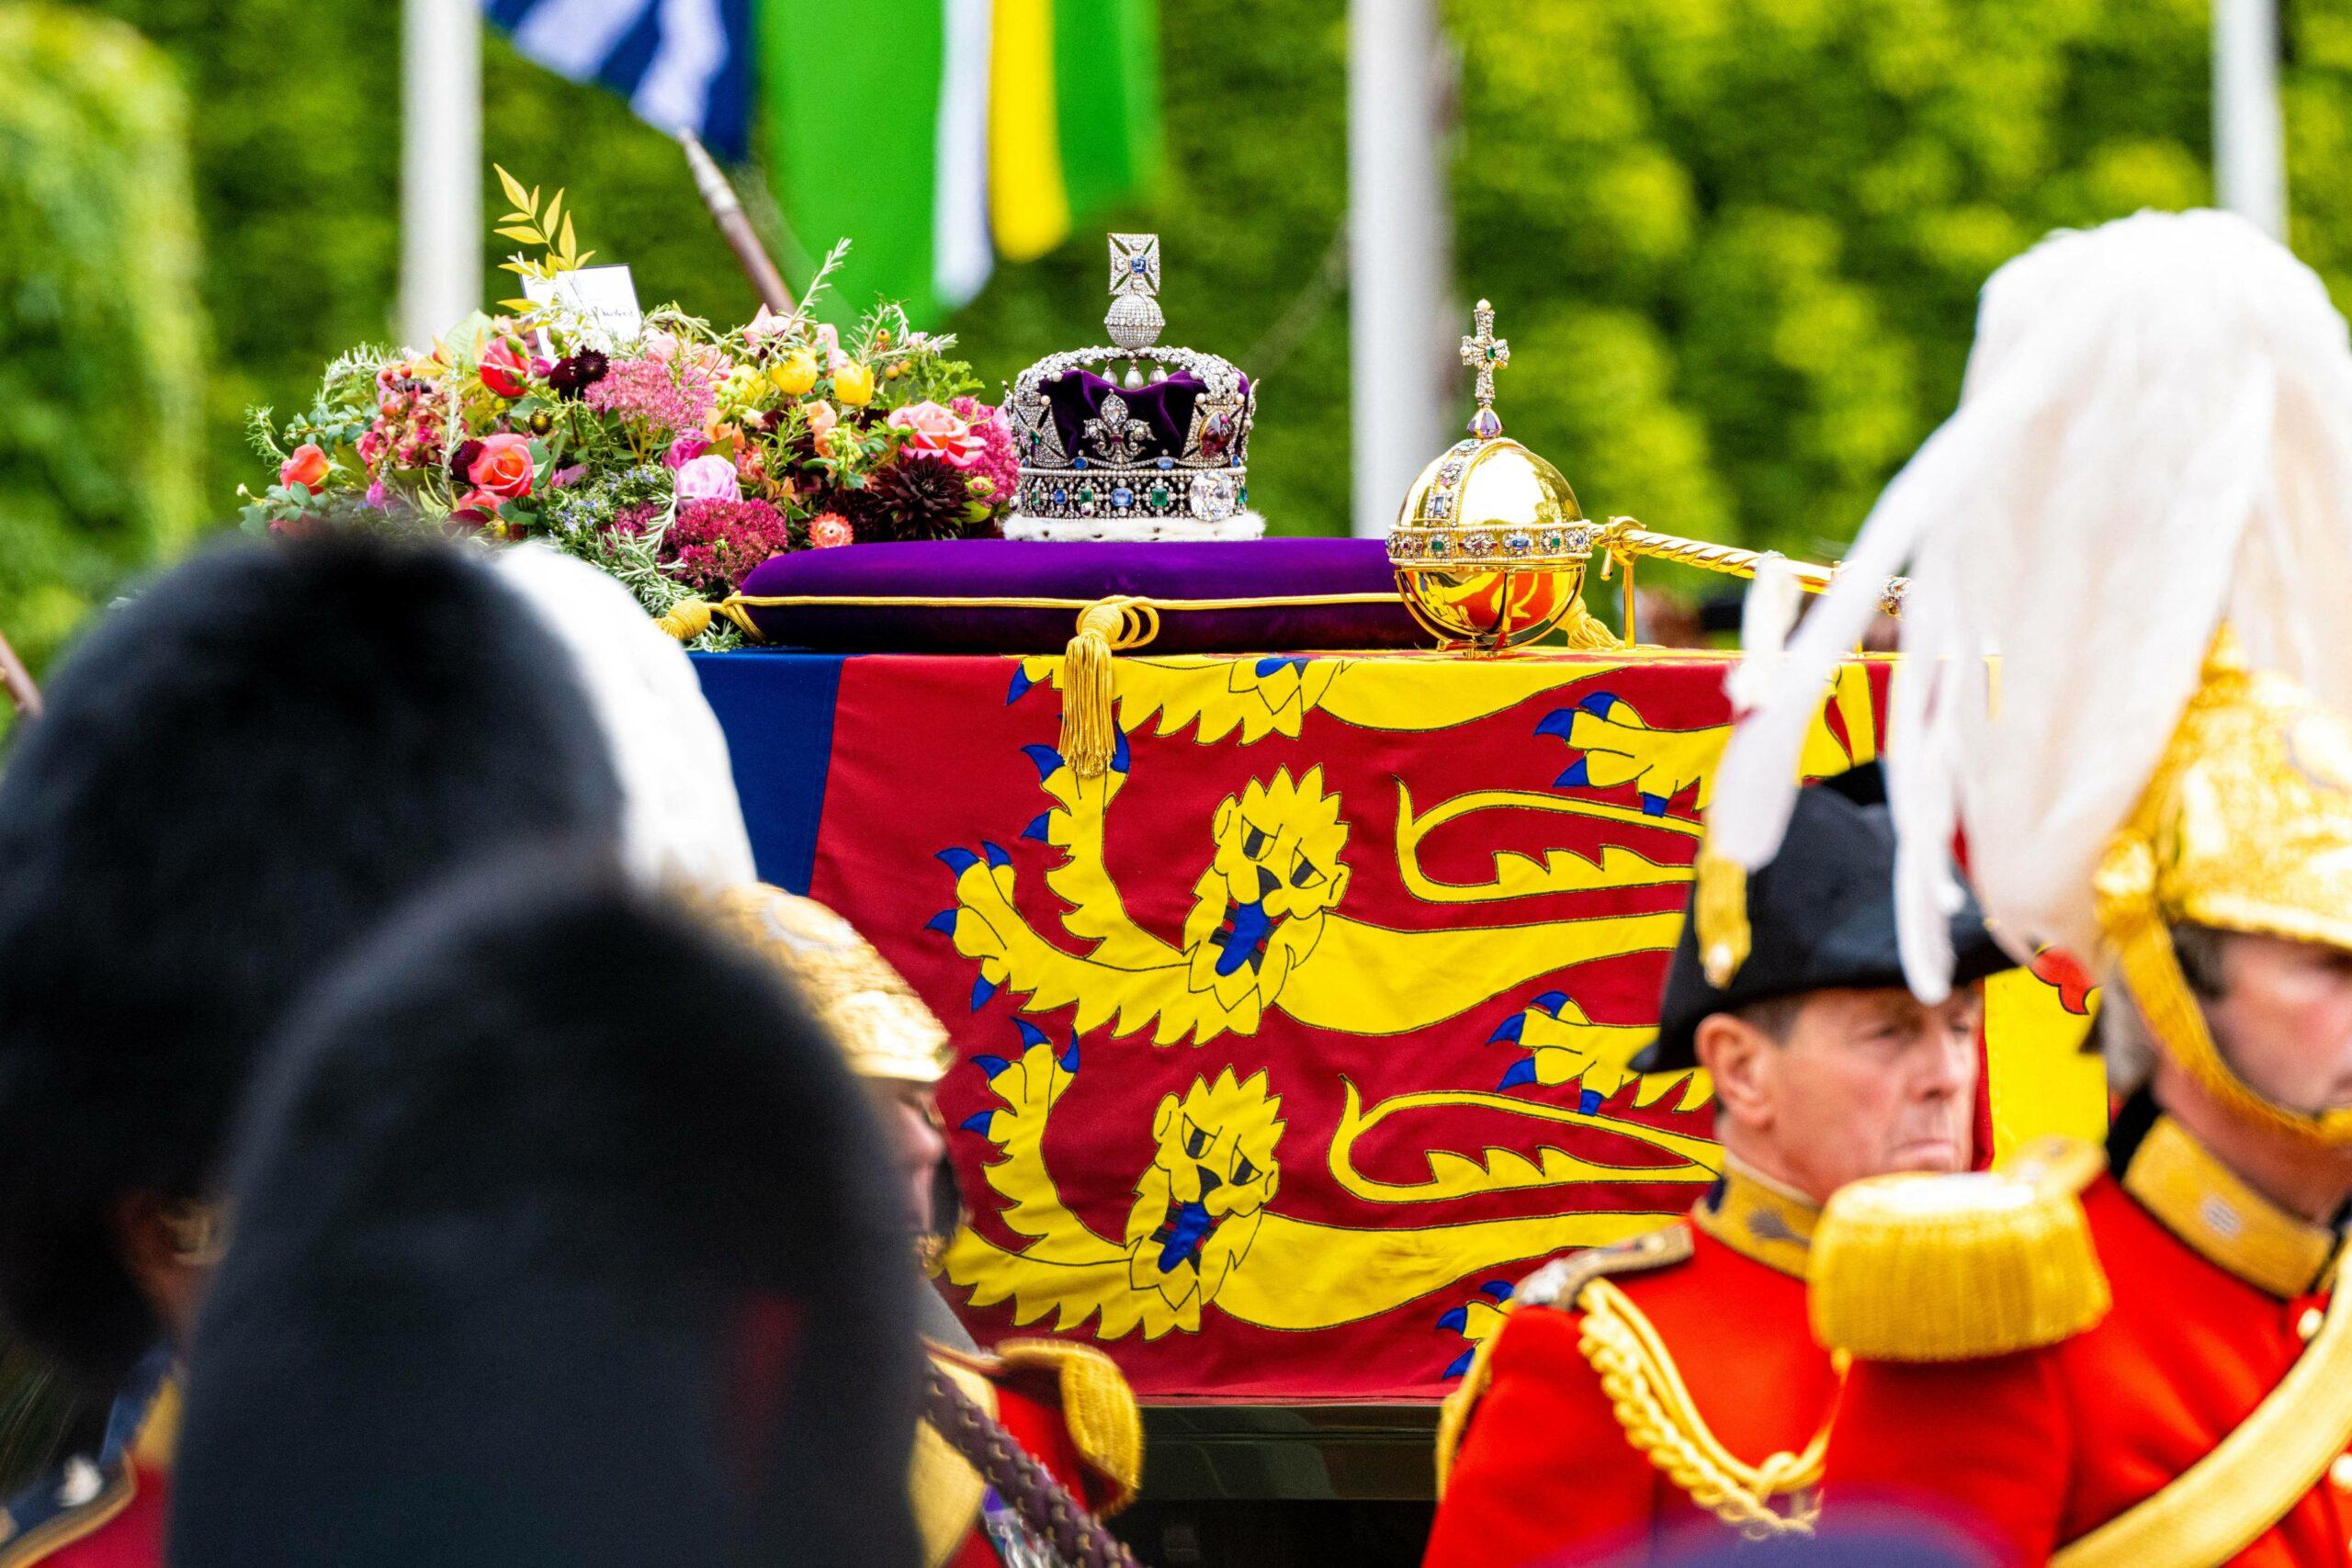 Queen Elizabeth II state funeral, London, UK - 19 Sept 2022